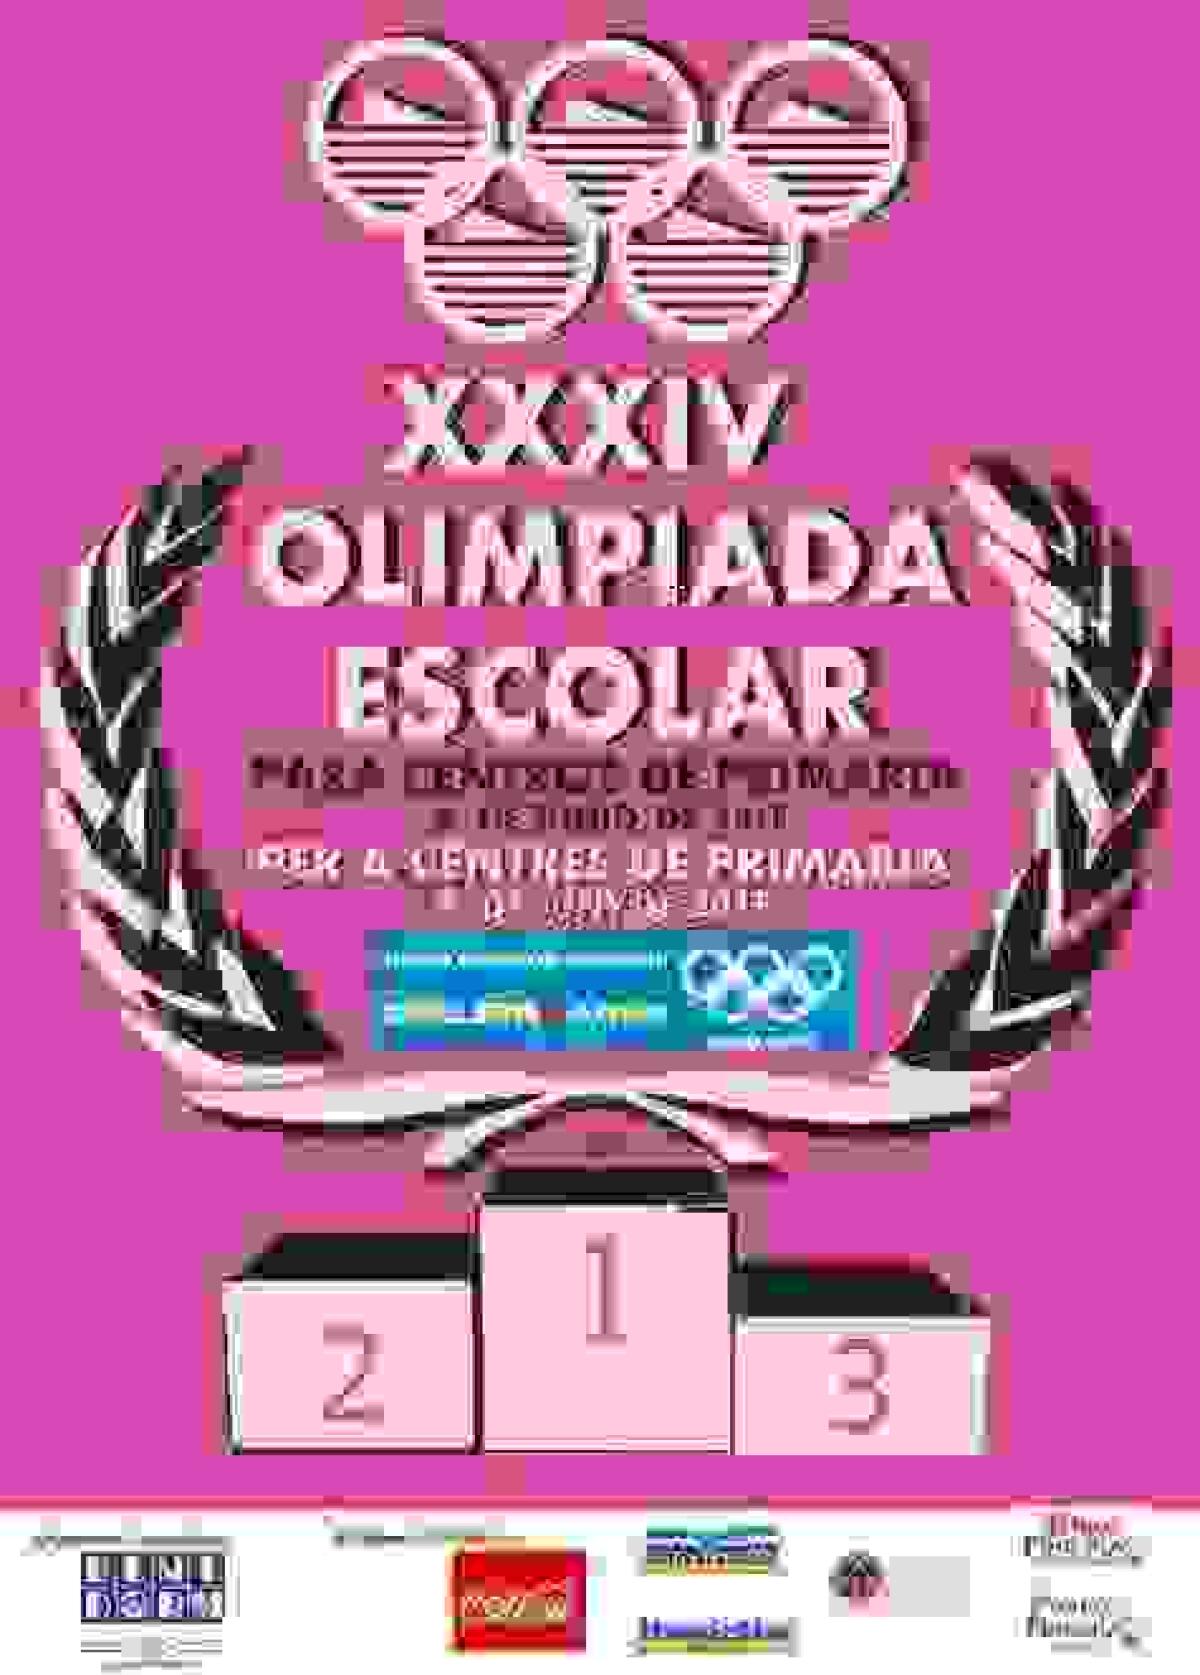  900 alumnos de Benidorm competirán en la XXXIV Olimpiada Escolar de Primaria